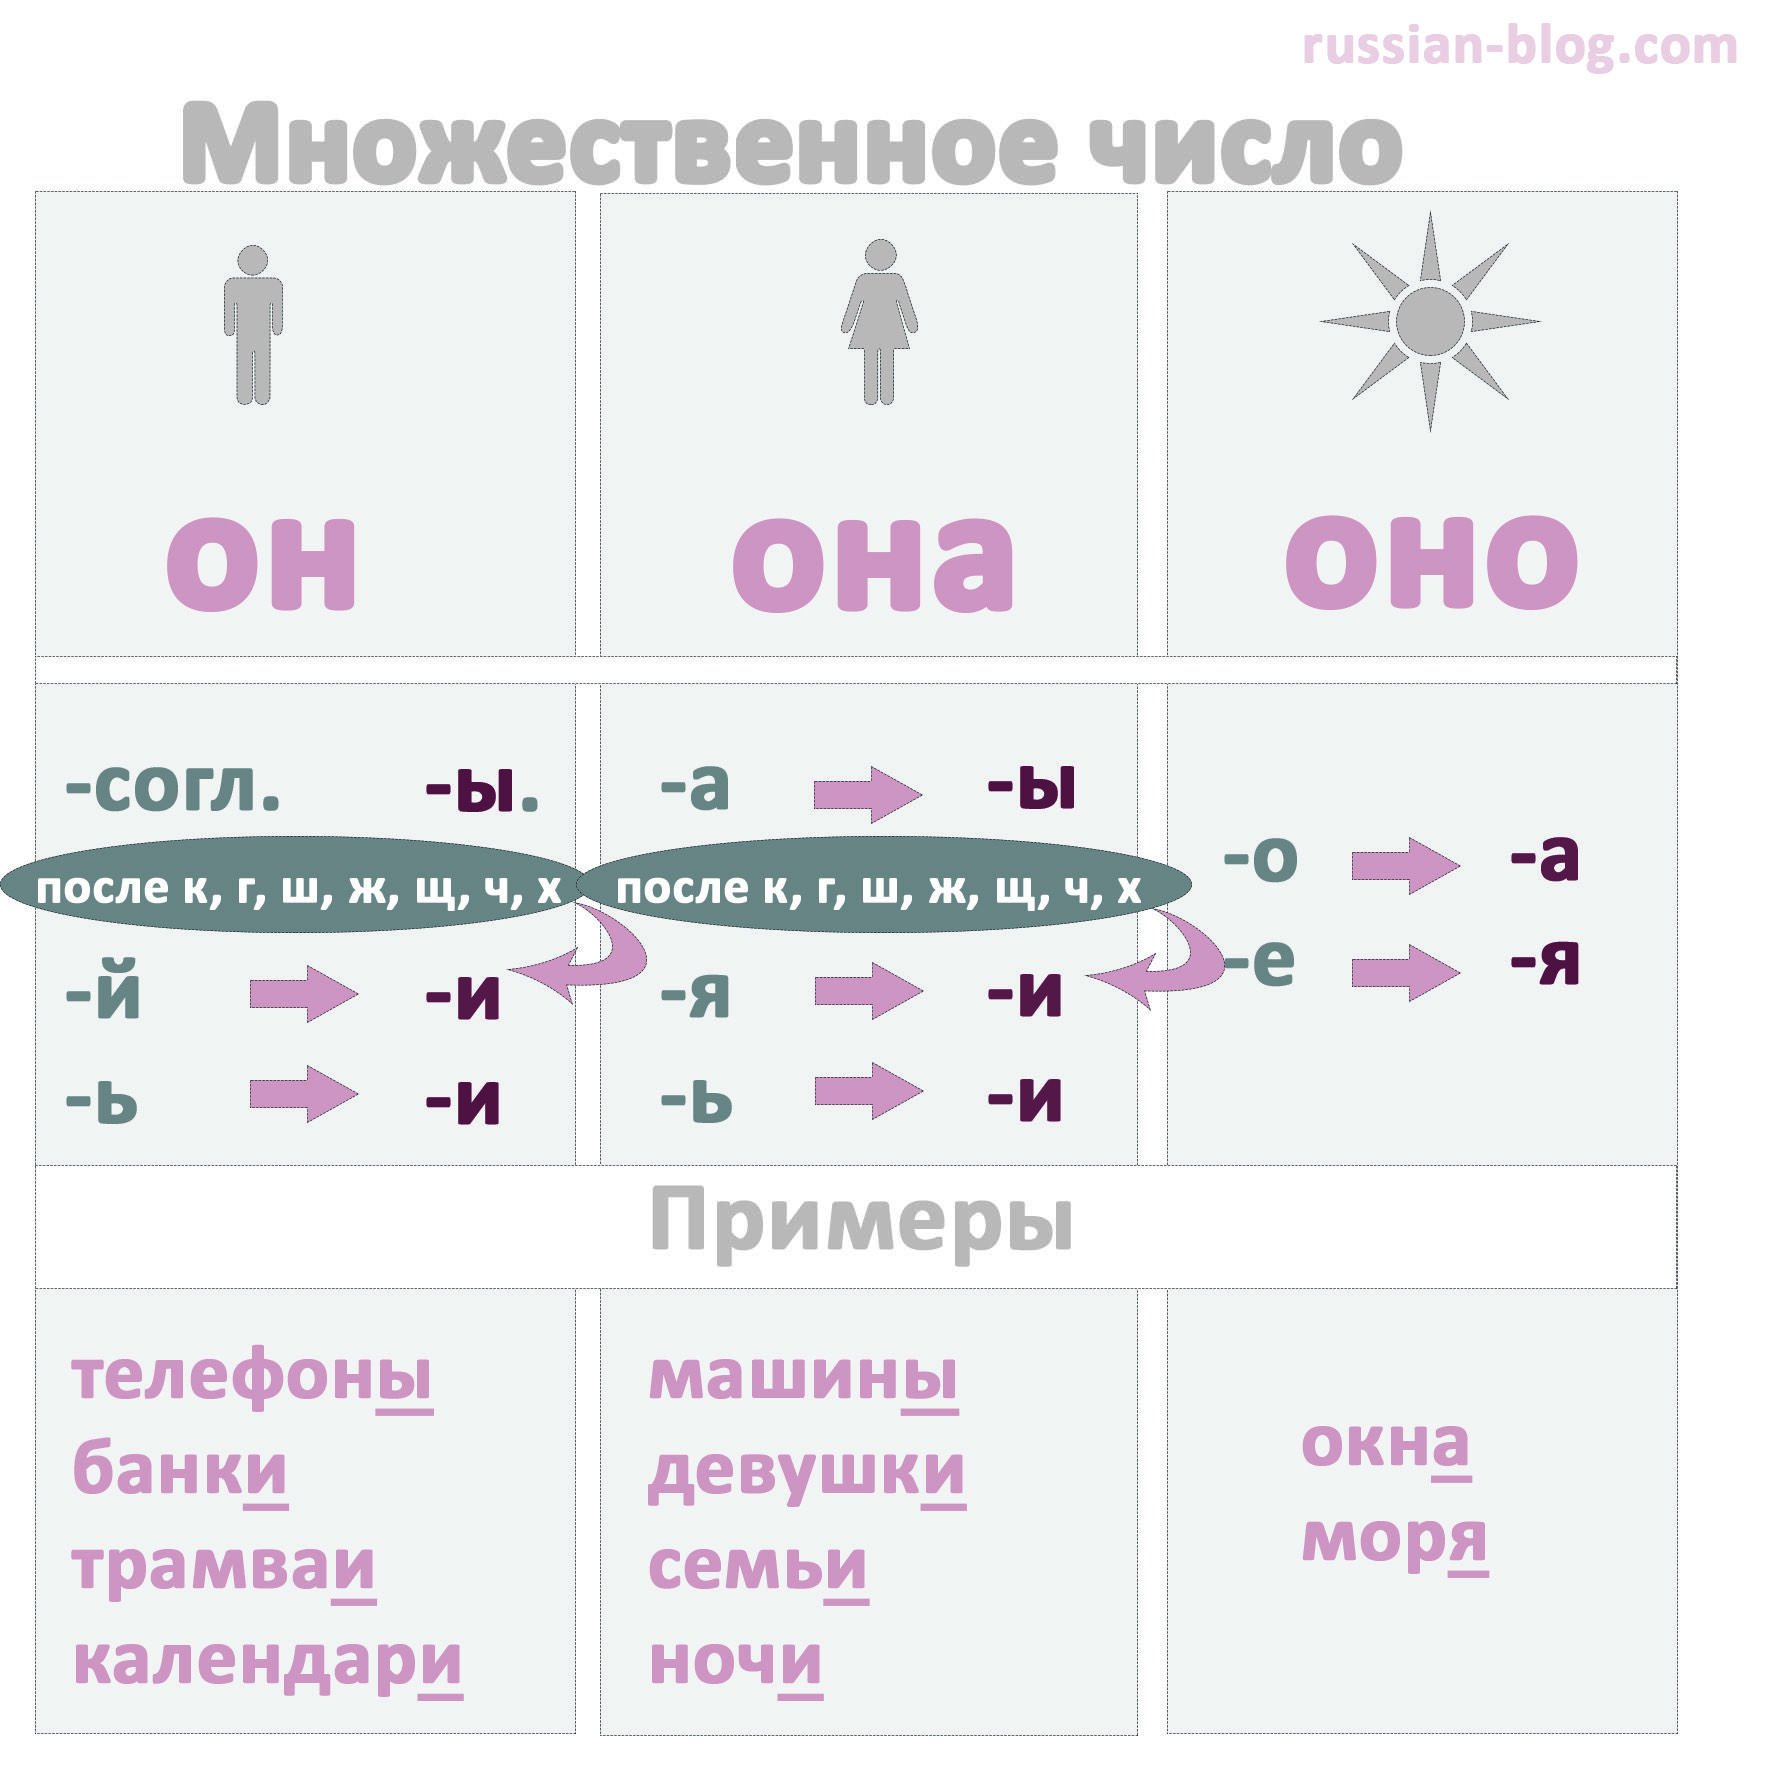 Образование существительных в русском языке. Как образовывать множественное число в русском языке. Множественное число существительных в русском языке правило. РКИ множественное число существительных. Как образовать множественное число существительных в русском языке.